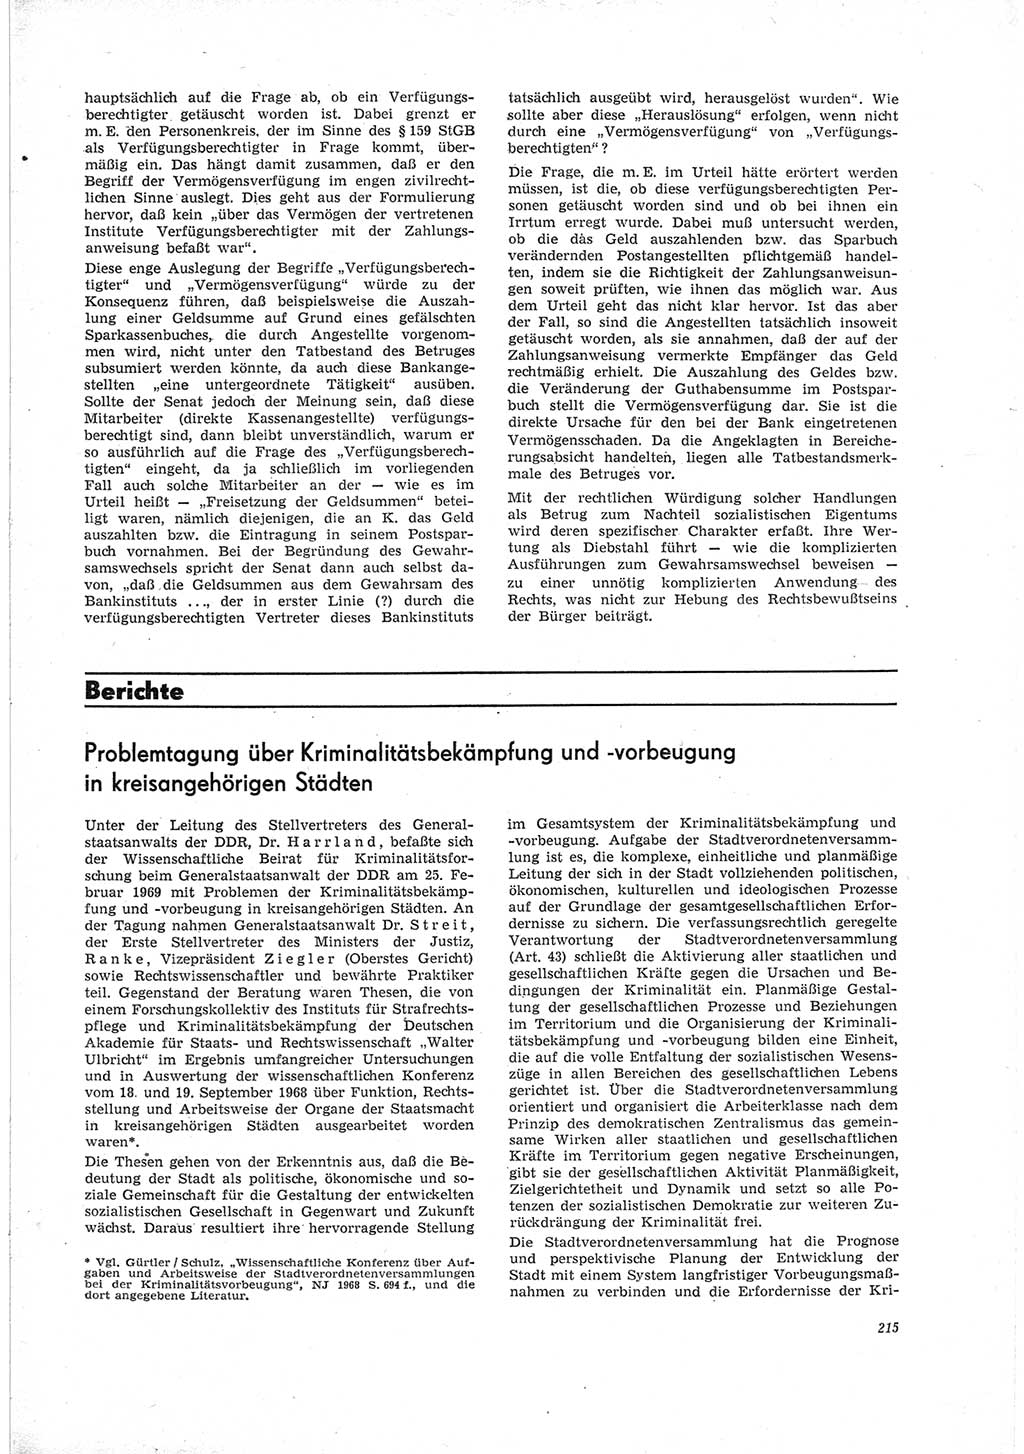 Neue Justiz (NJ), Zeitschrift für Recht und Rechtswissenschaft [Deutsche Demokratische Republik (DDR)], 23. Jahrgang 1969, Seite 215 (NJ DDR 1969, S. 215)